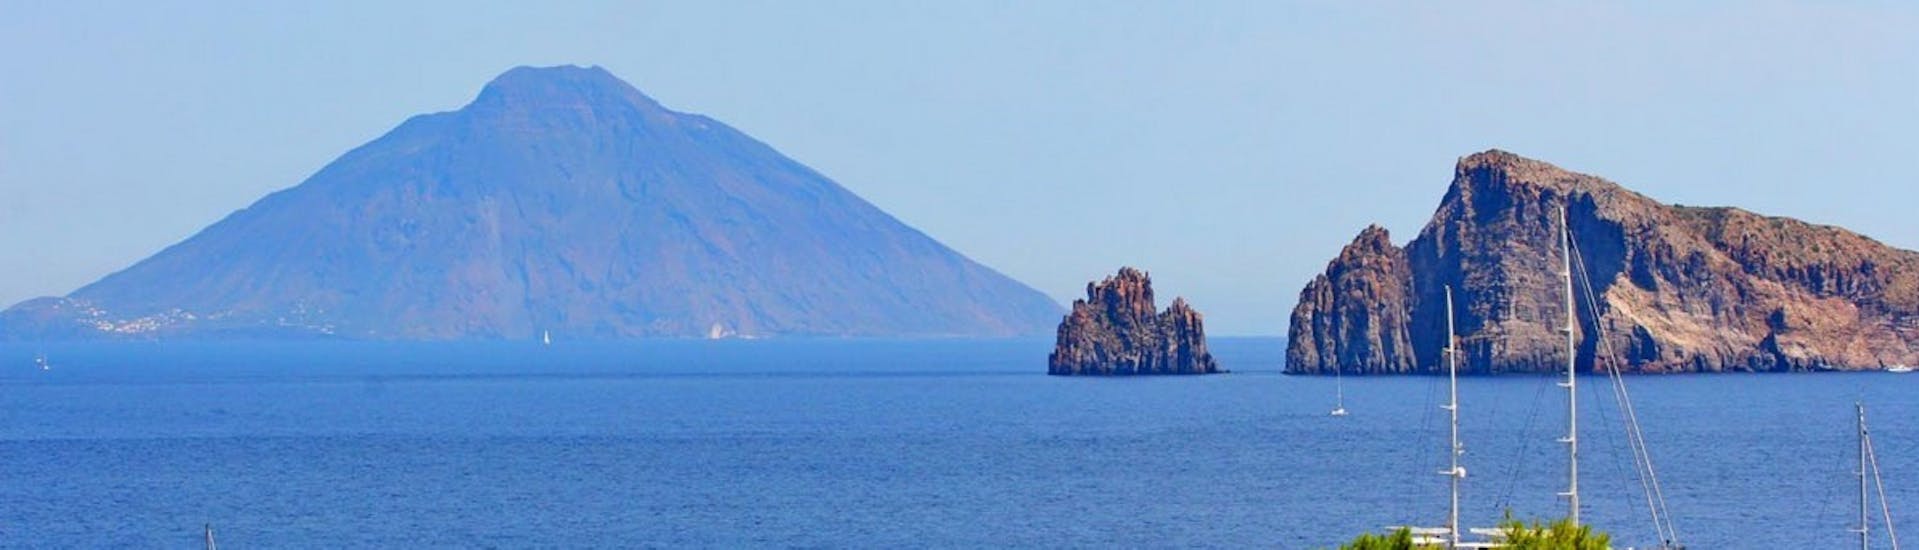 Imagen de las islas Eolias tomada durante el viaje en barco a Panarea y Stromboli desde Tropea.